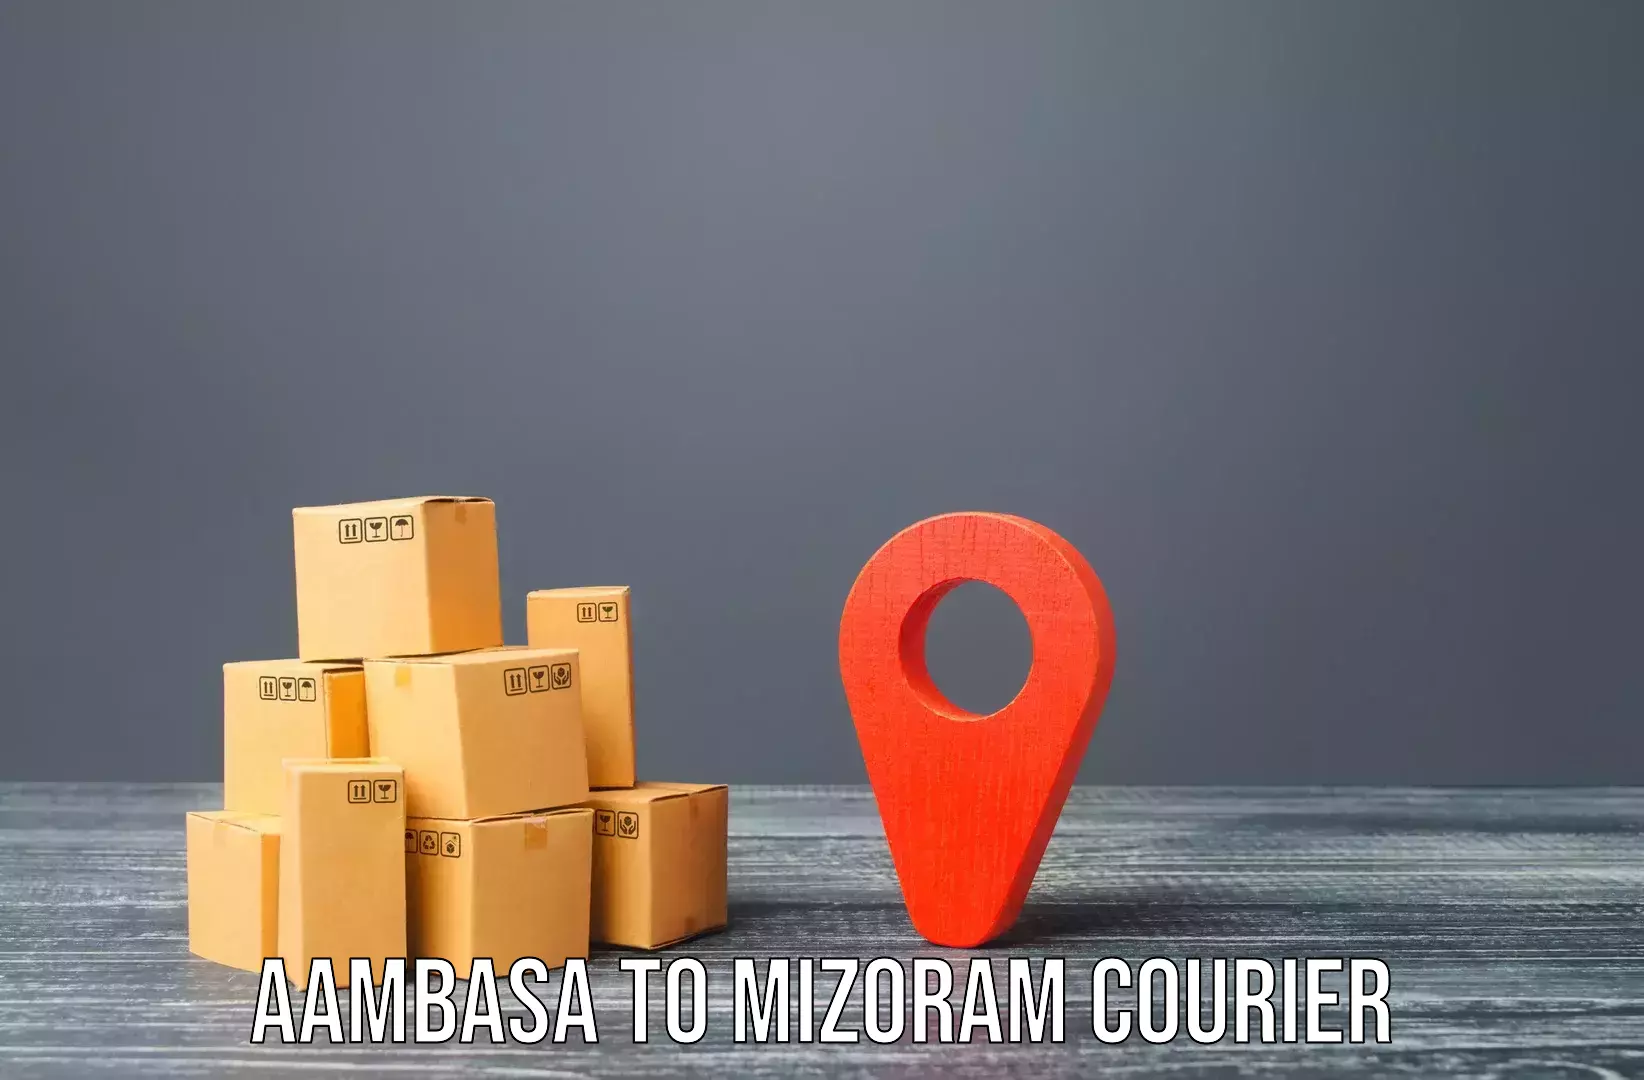 Furniture logistics Aambasa to Mizoram